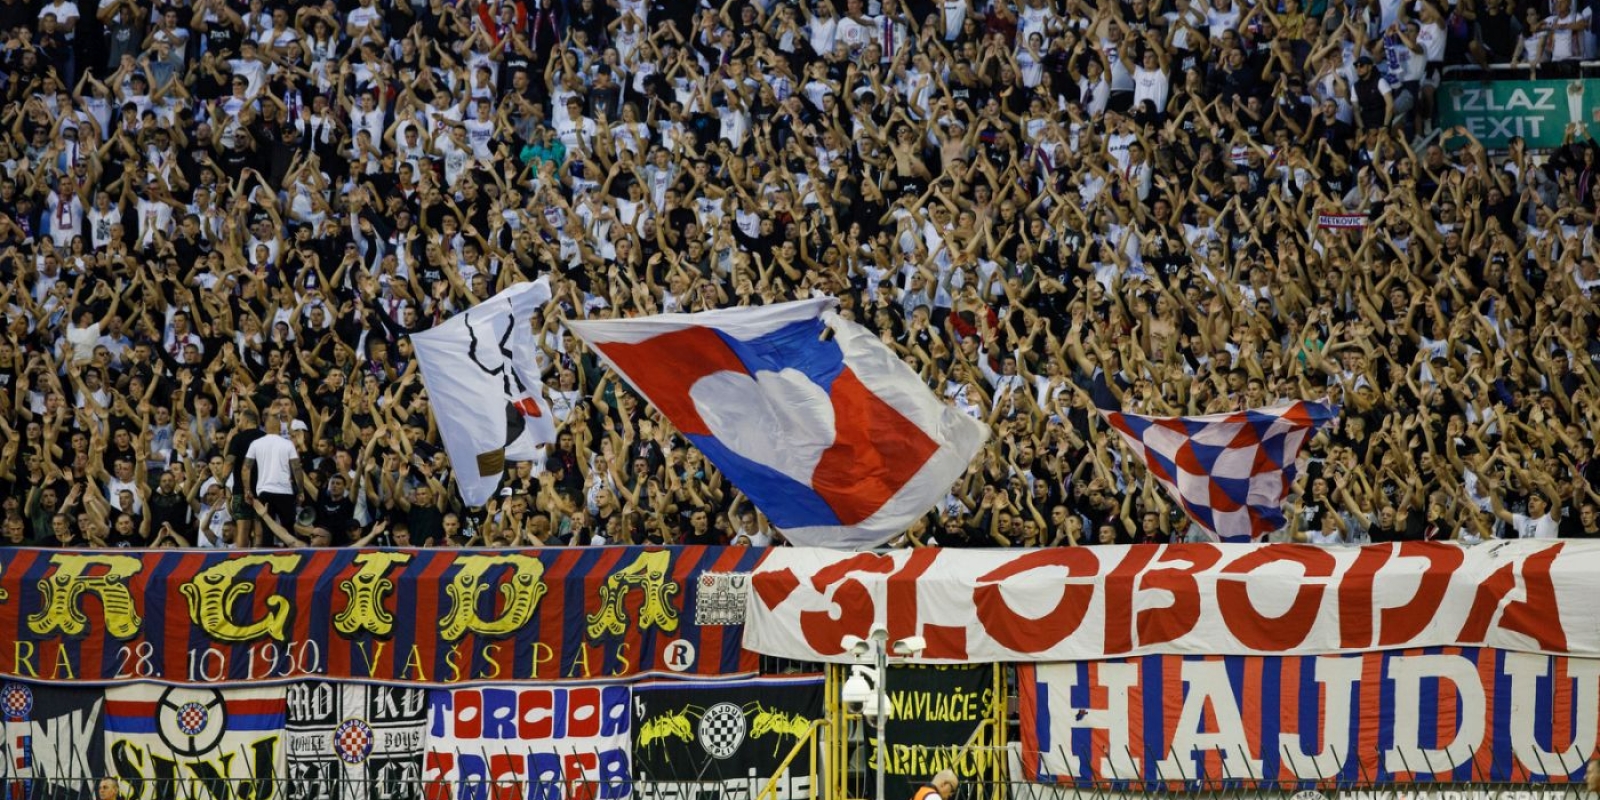 Prodaja ulaznica za utakmicu Hajduk - Rijeka započinje u utorak 23. siječnja